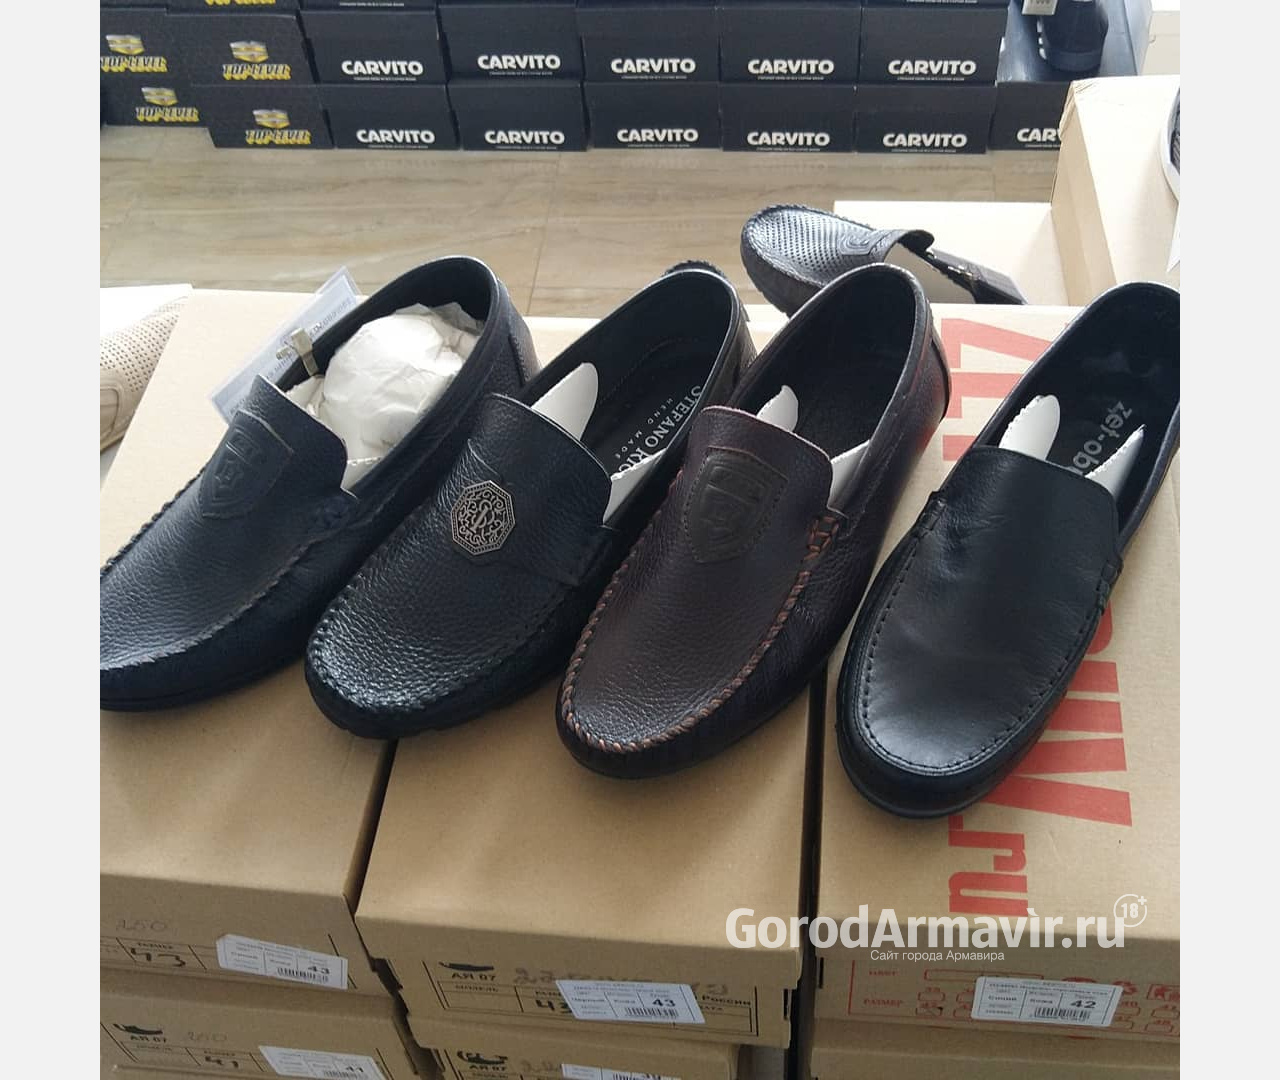  Купить качественную кожаную обувь от производителя по невероятно доступным ценам можно в Армавире